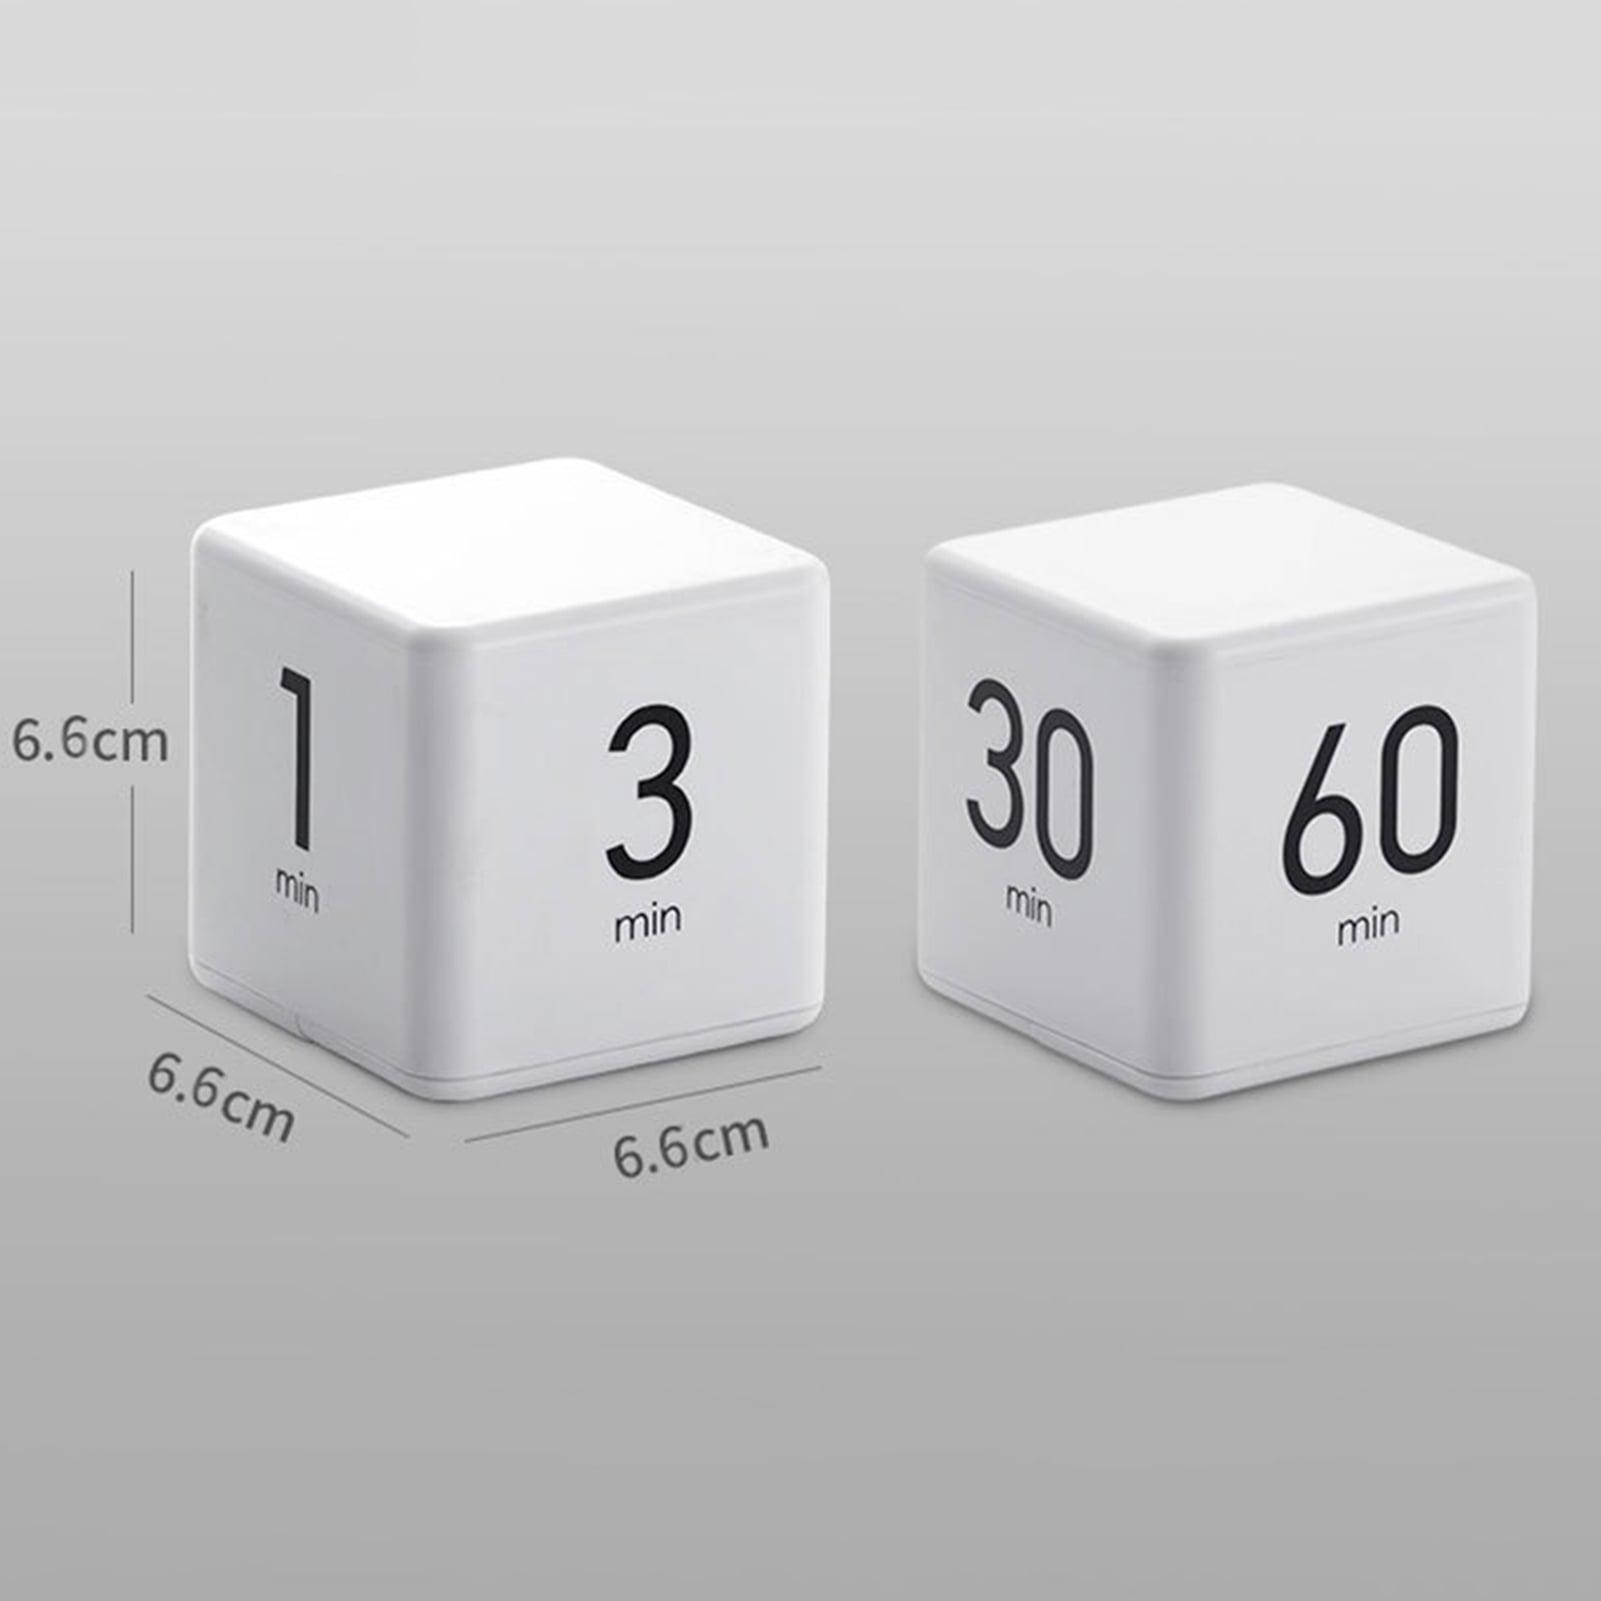 Cube timing. Cube timer narxi. Таймер кубик. Таймер кухонный куб. Time Cube timer.